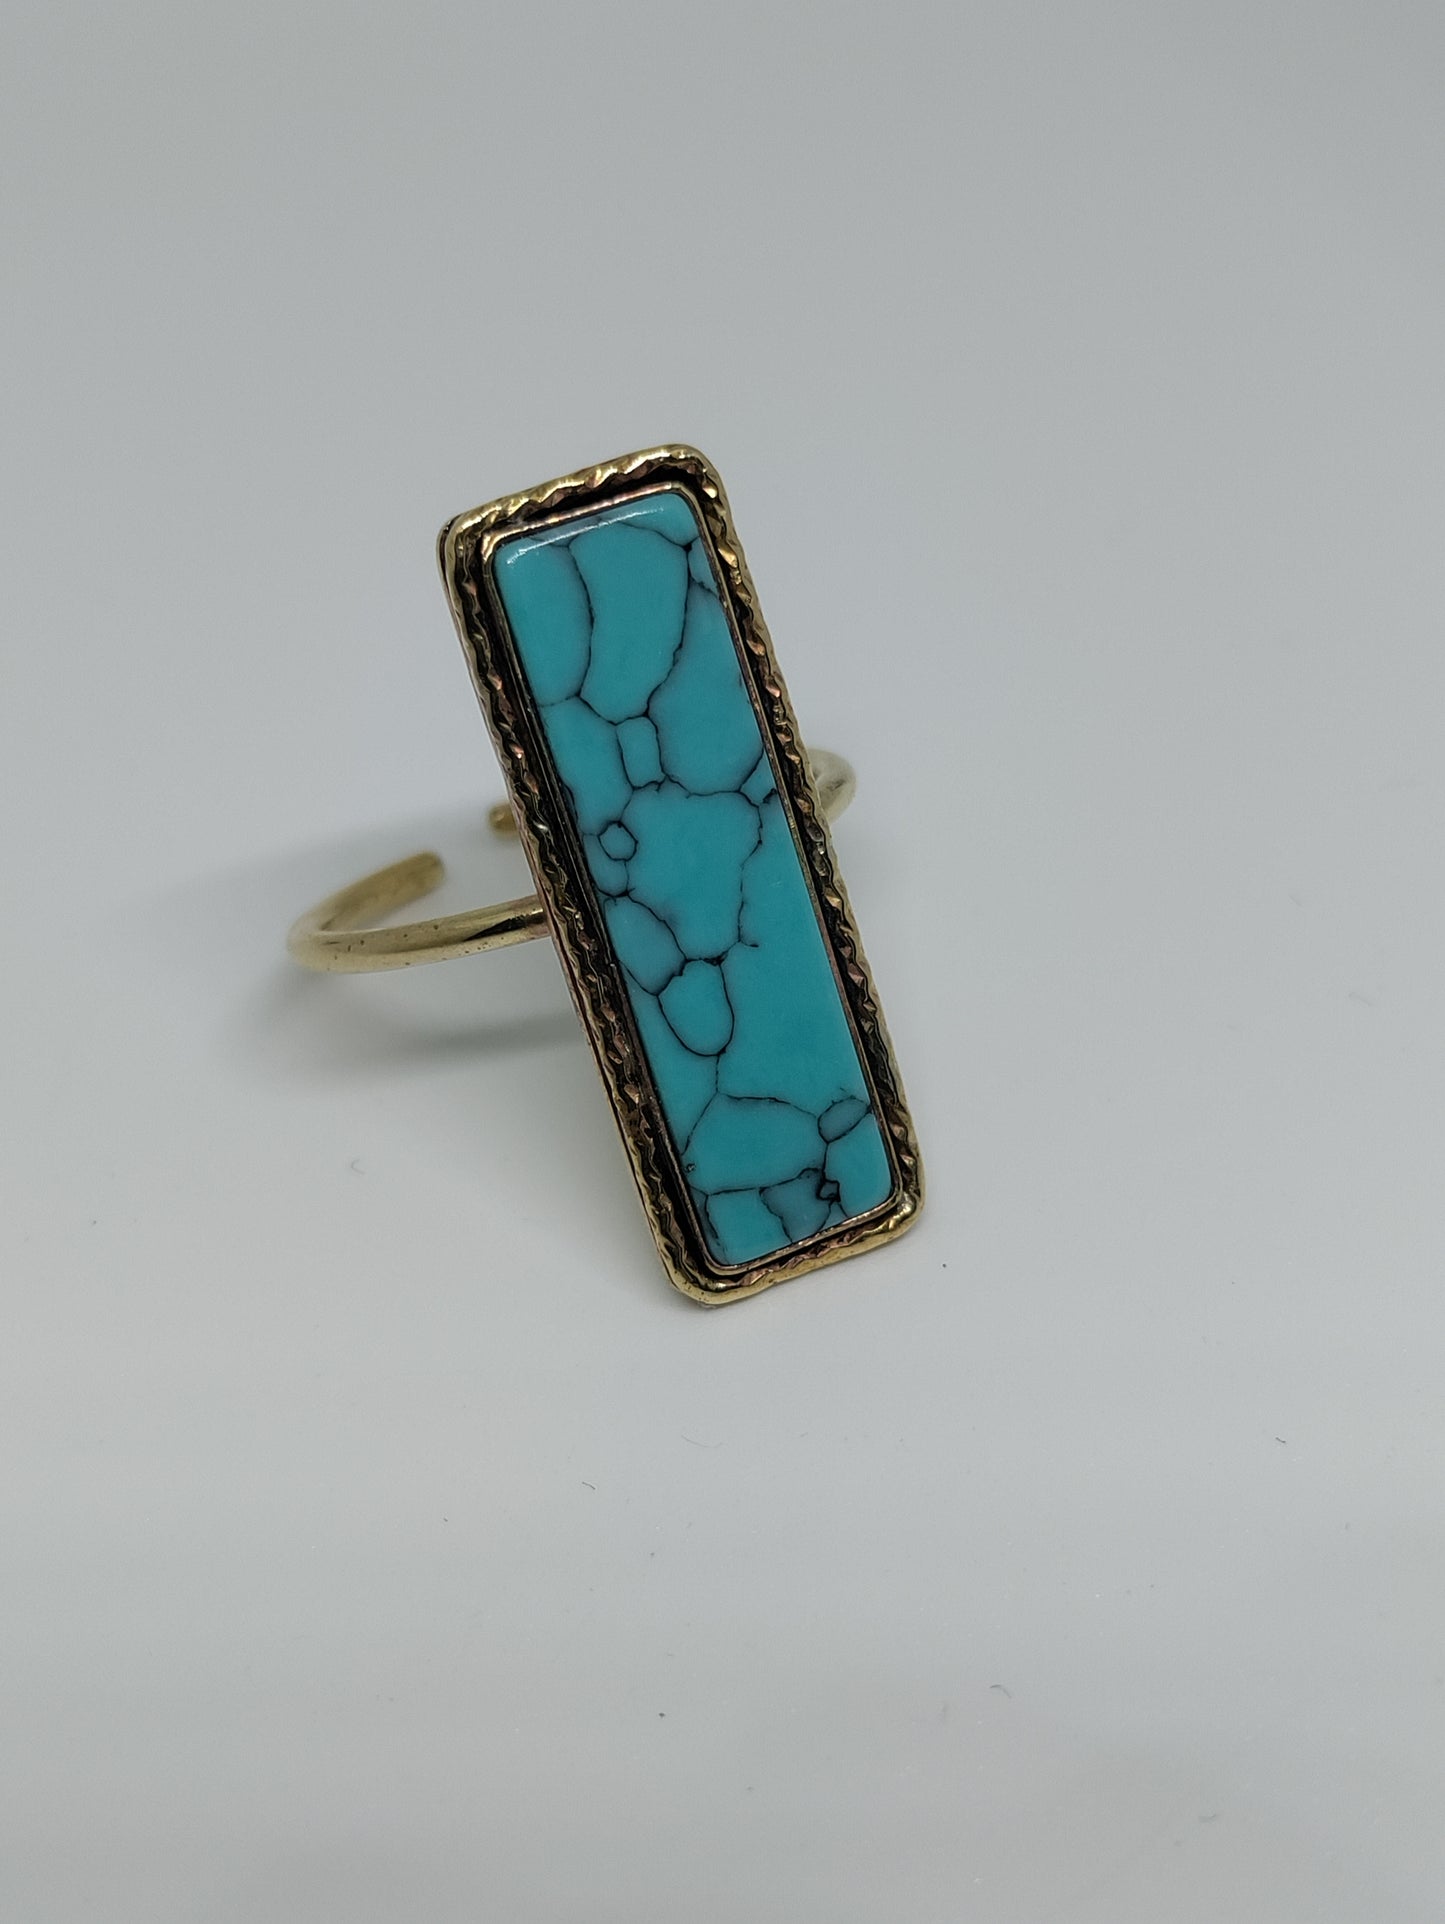 Prototype jewelry by LEIA&CO